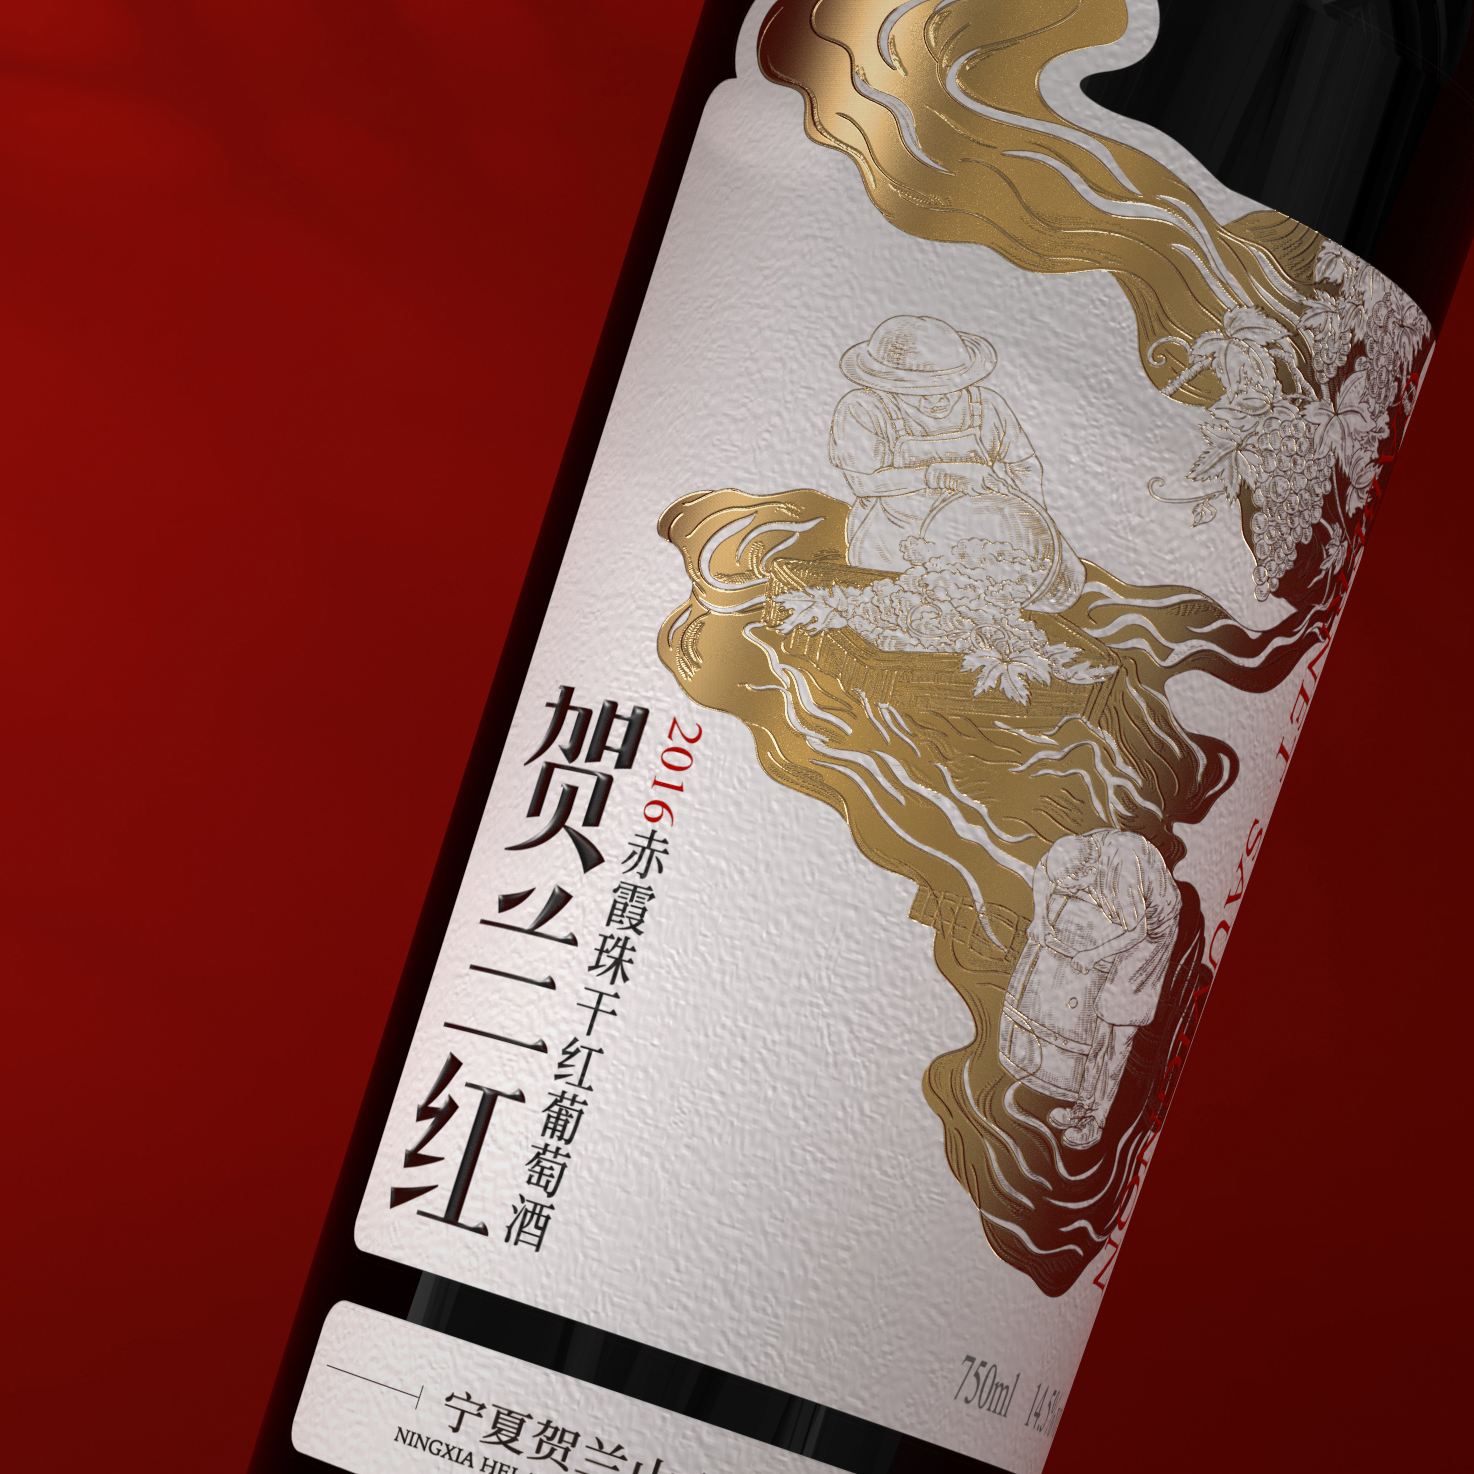 贺兰红2016赤霞珠干红葡萄酒包装设计